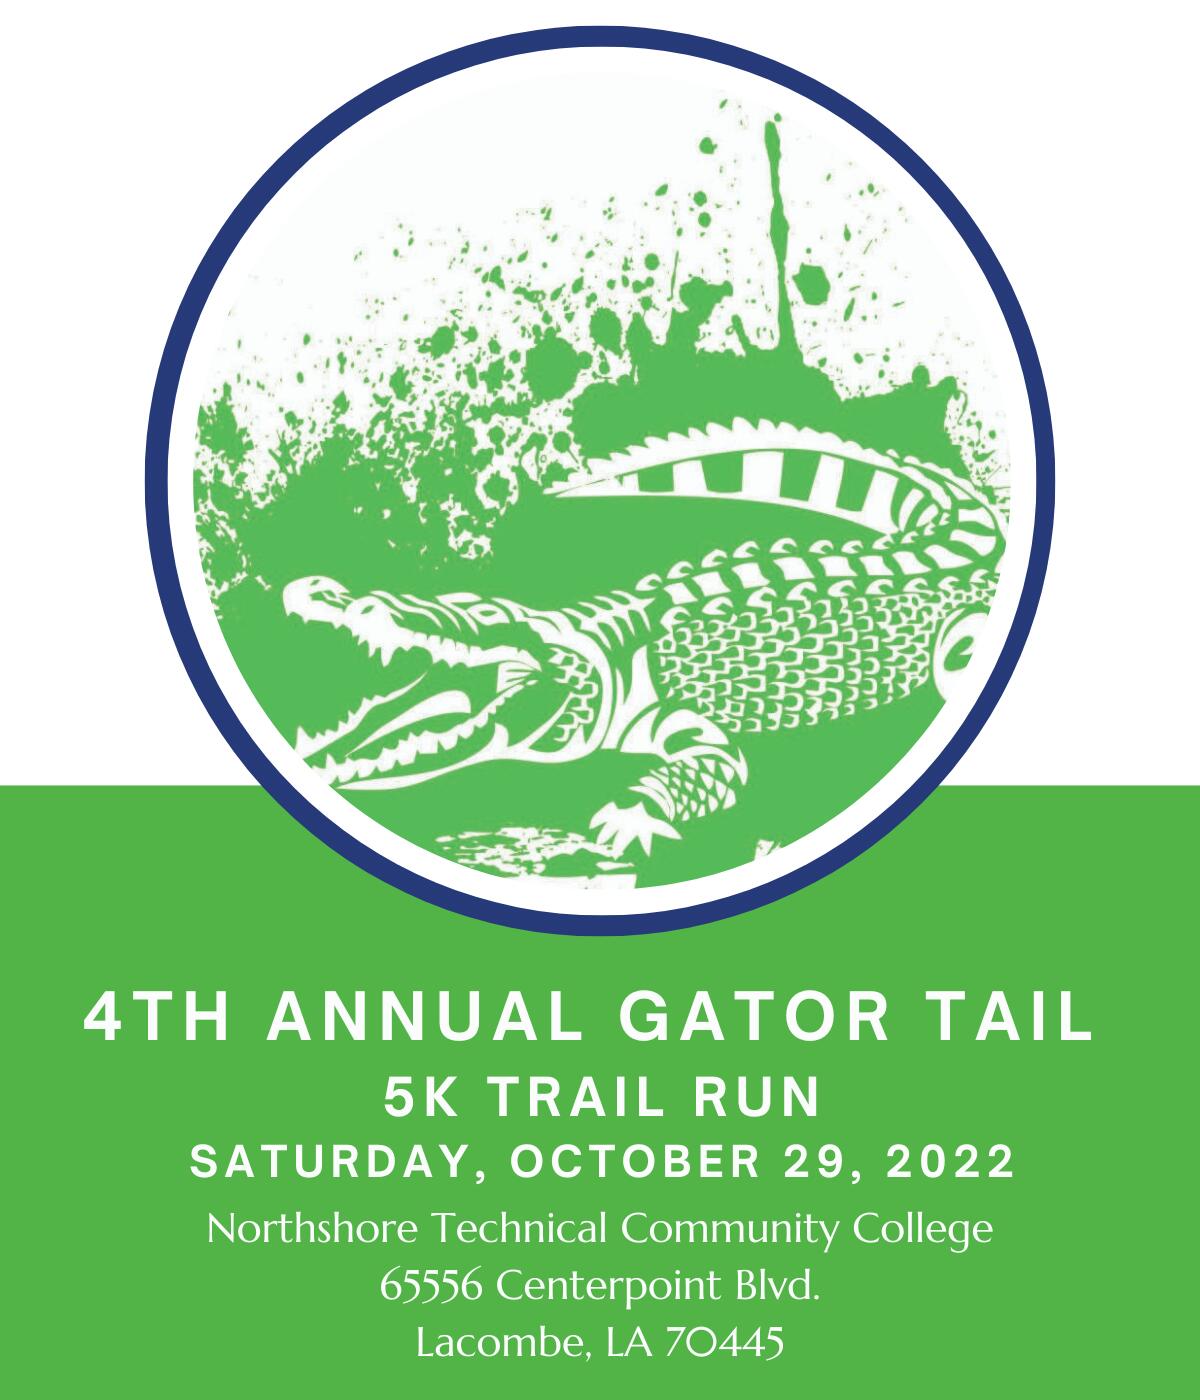 Gator Tail 5k Trail Run logo